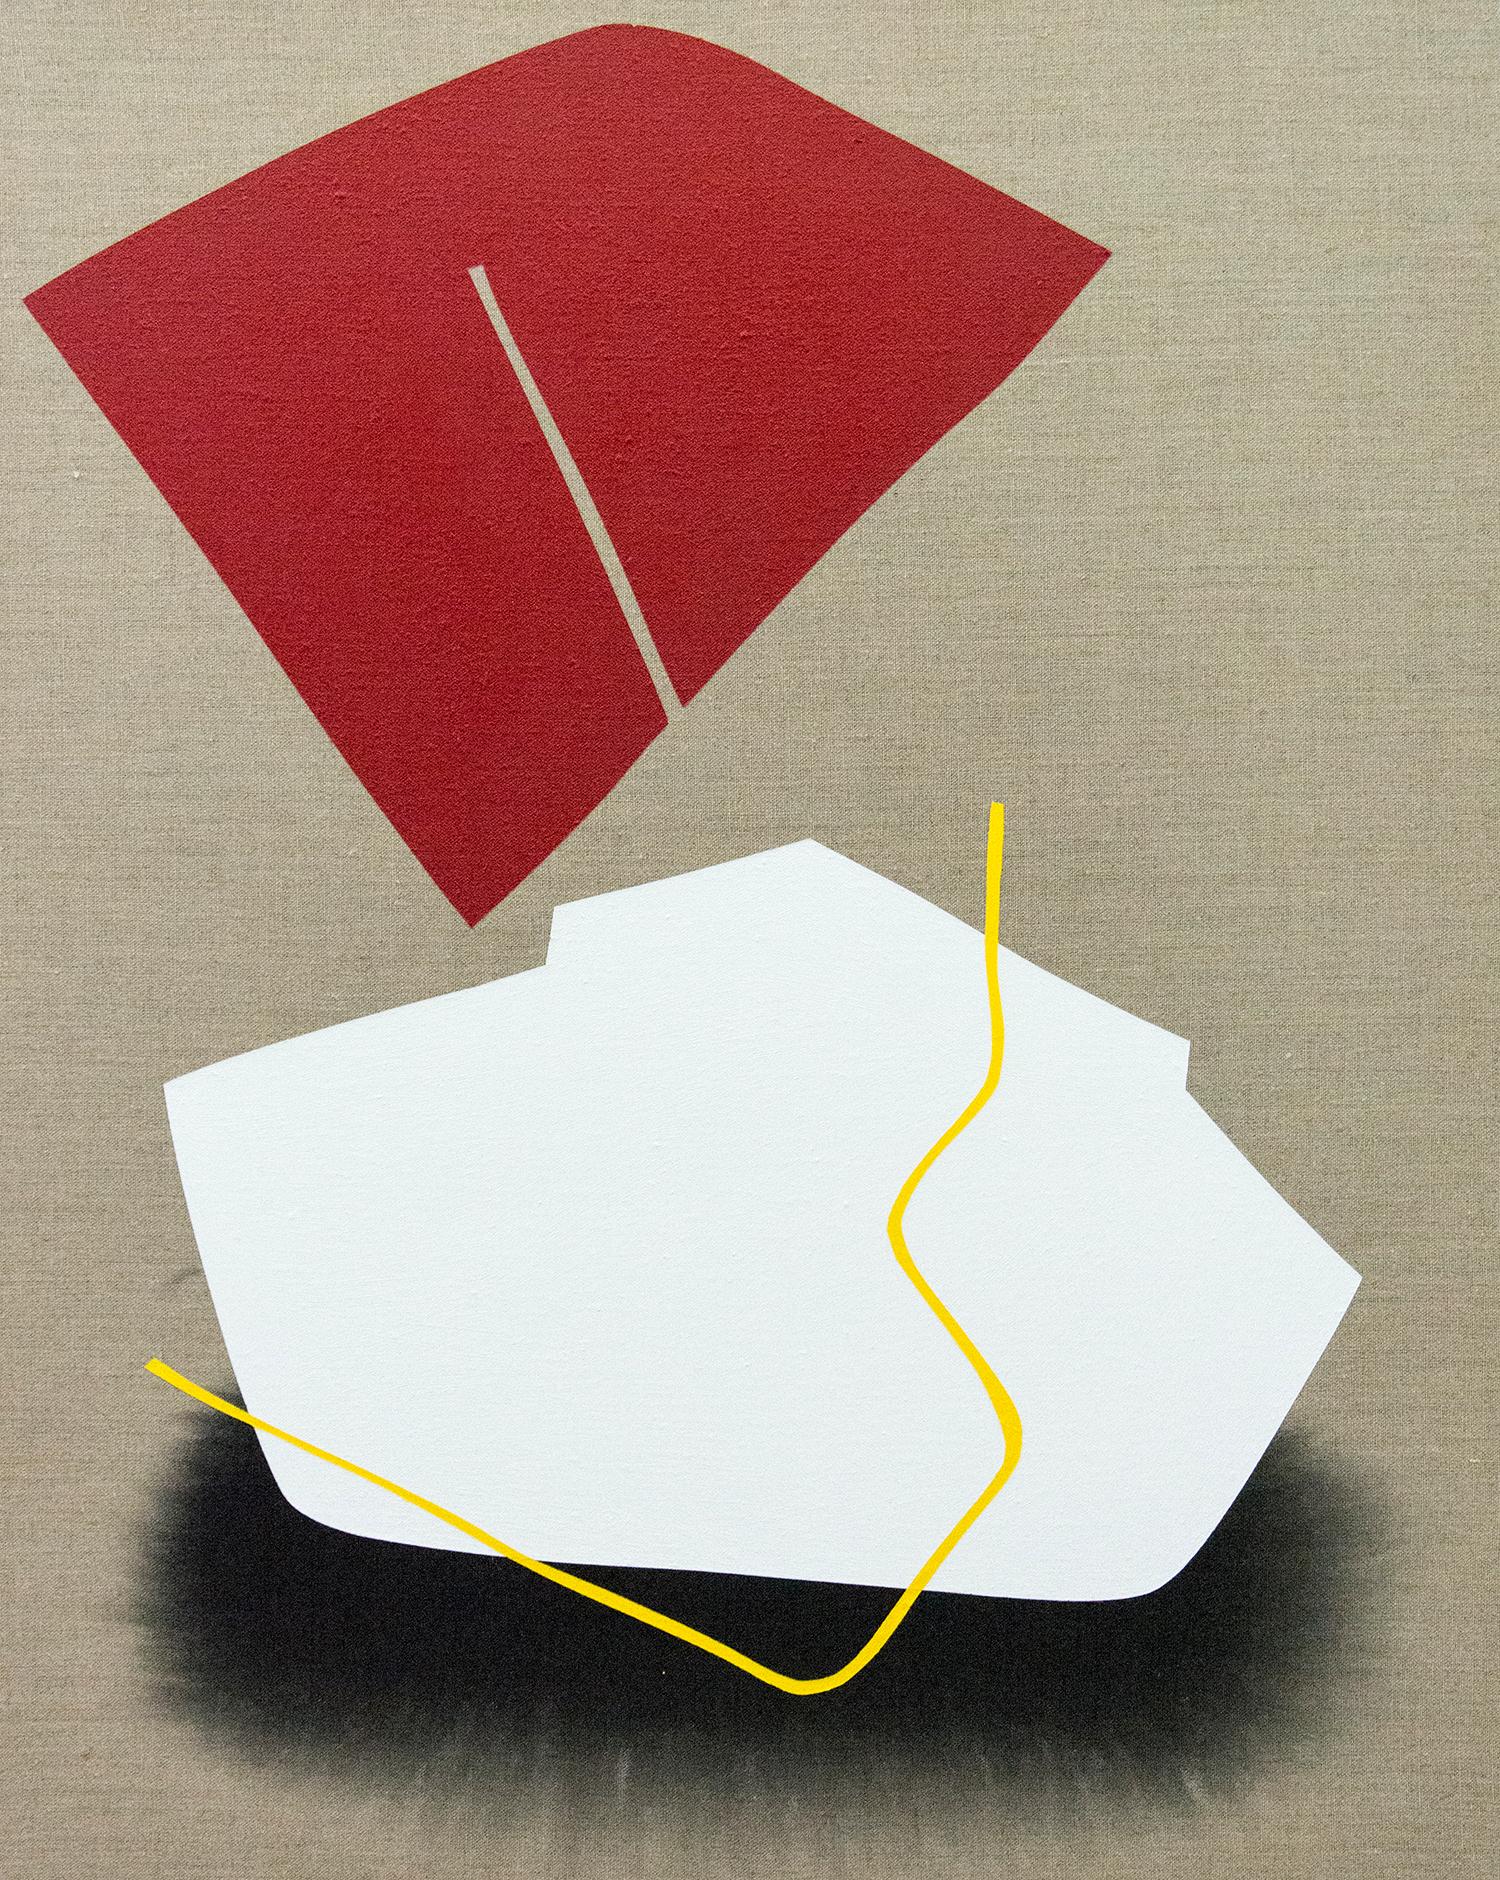 Blocs rouges et blancs - ensemble de quatre peintures ludiques sur lin - Painting de Aron Hill